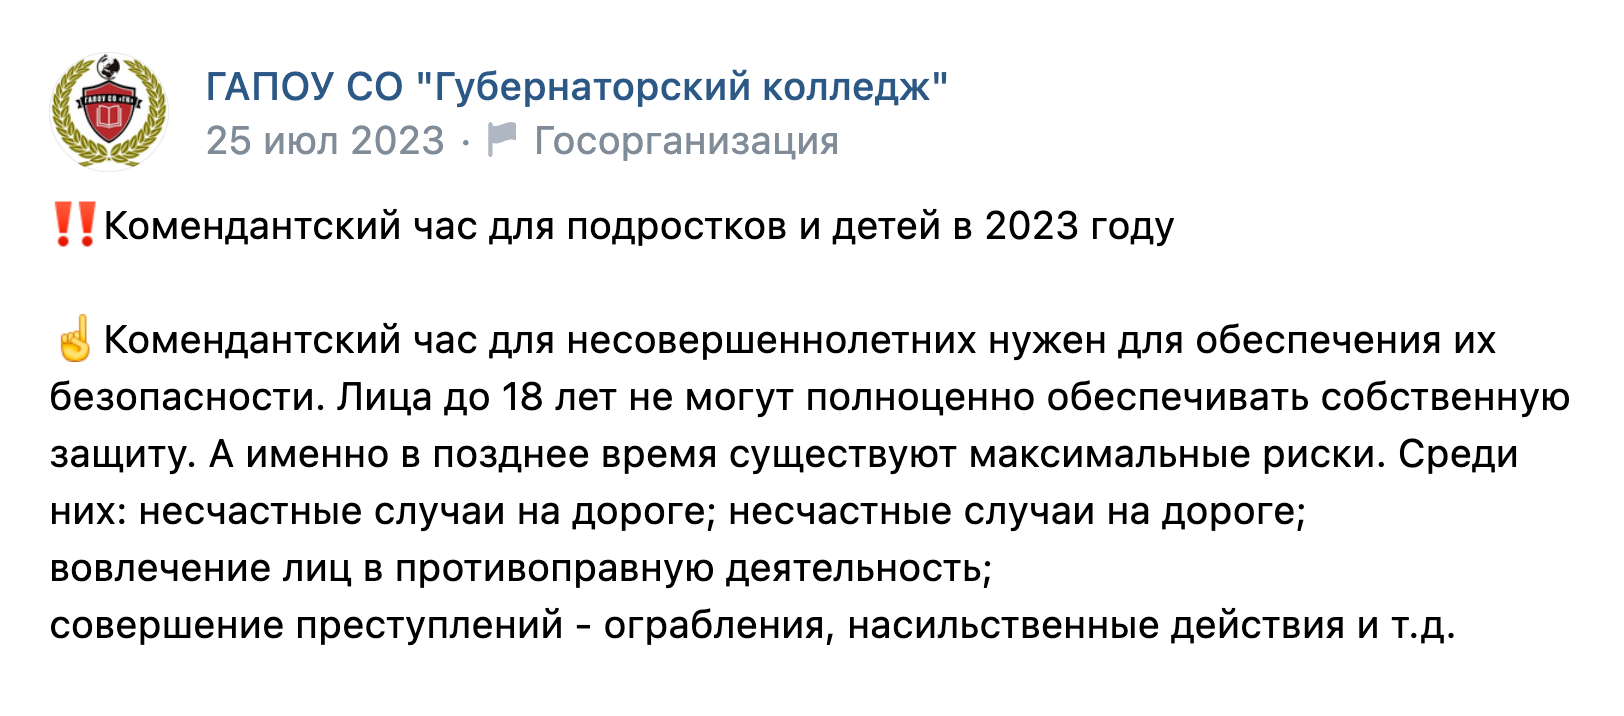 Администрация колледжа в своей группе во «Вконтакте» объясняет, что комендантский час нужен для безопасности несовершеннолетних. Источник: ГАПОУ СО «Губернаторский колледж»